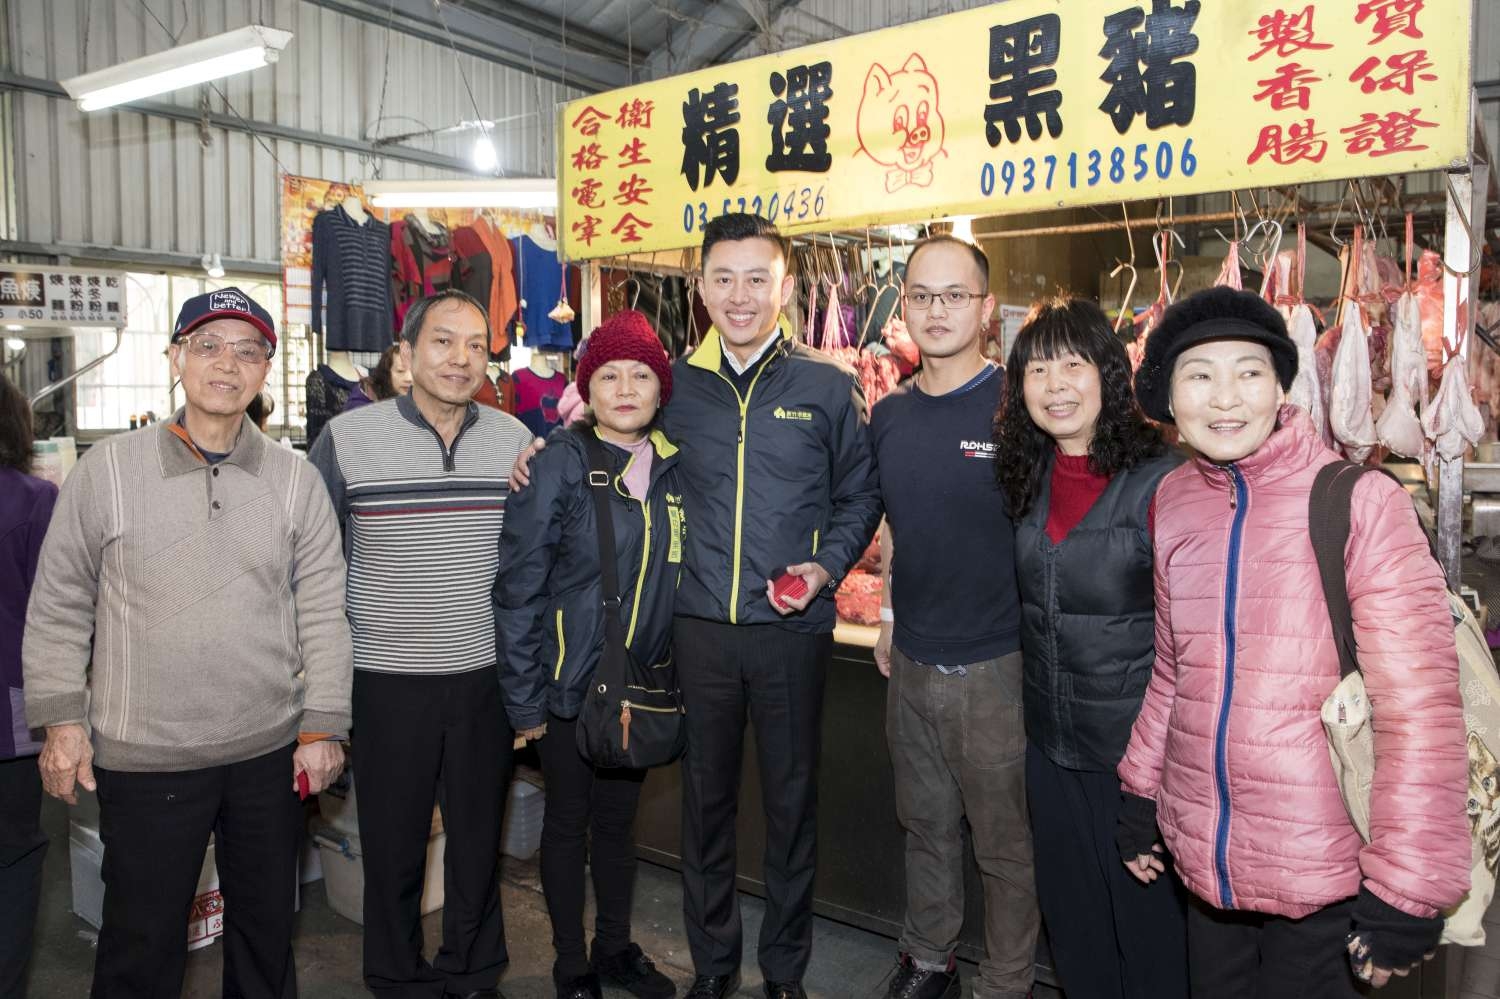 林智堅市長致贈圓滿紅包供不應求 45500份祝福民眾一定幸福